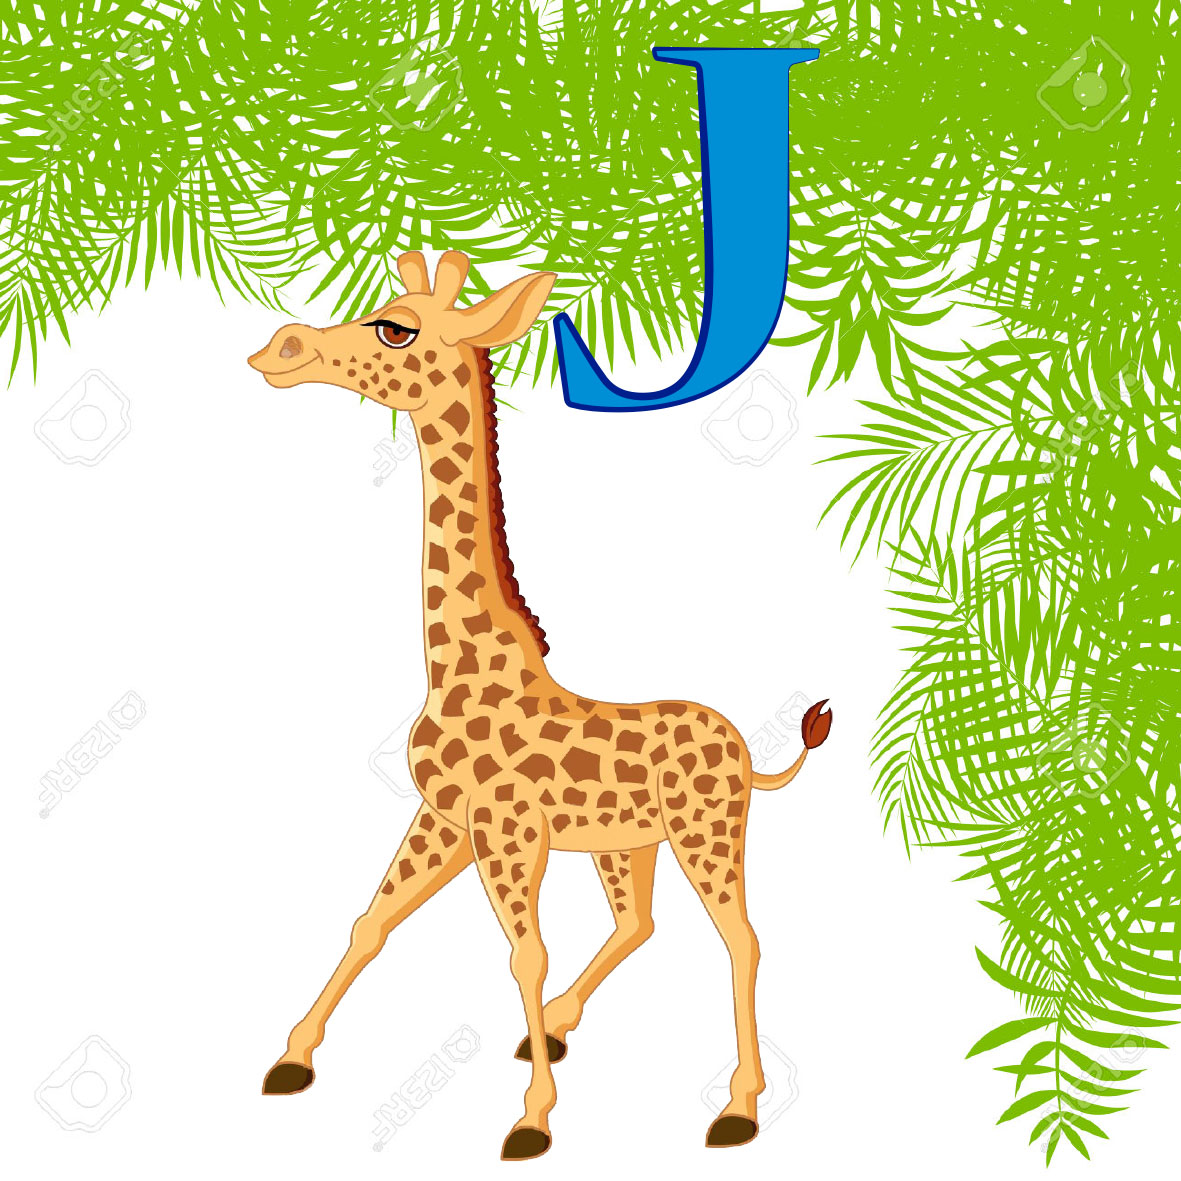 imagen de una Jirafa, es una animal salvaje que se caracteriza por su gran altura